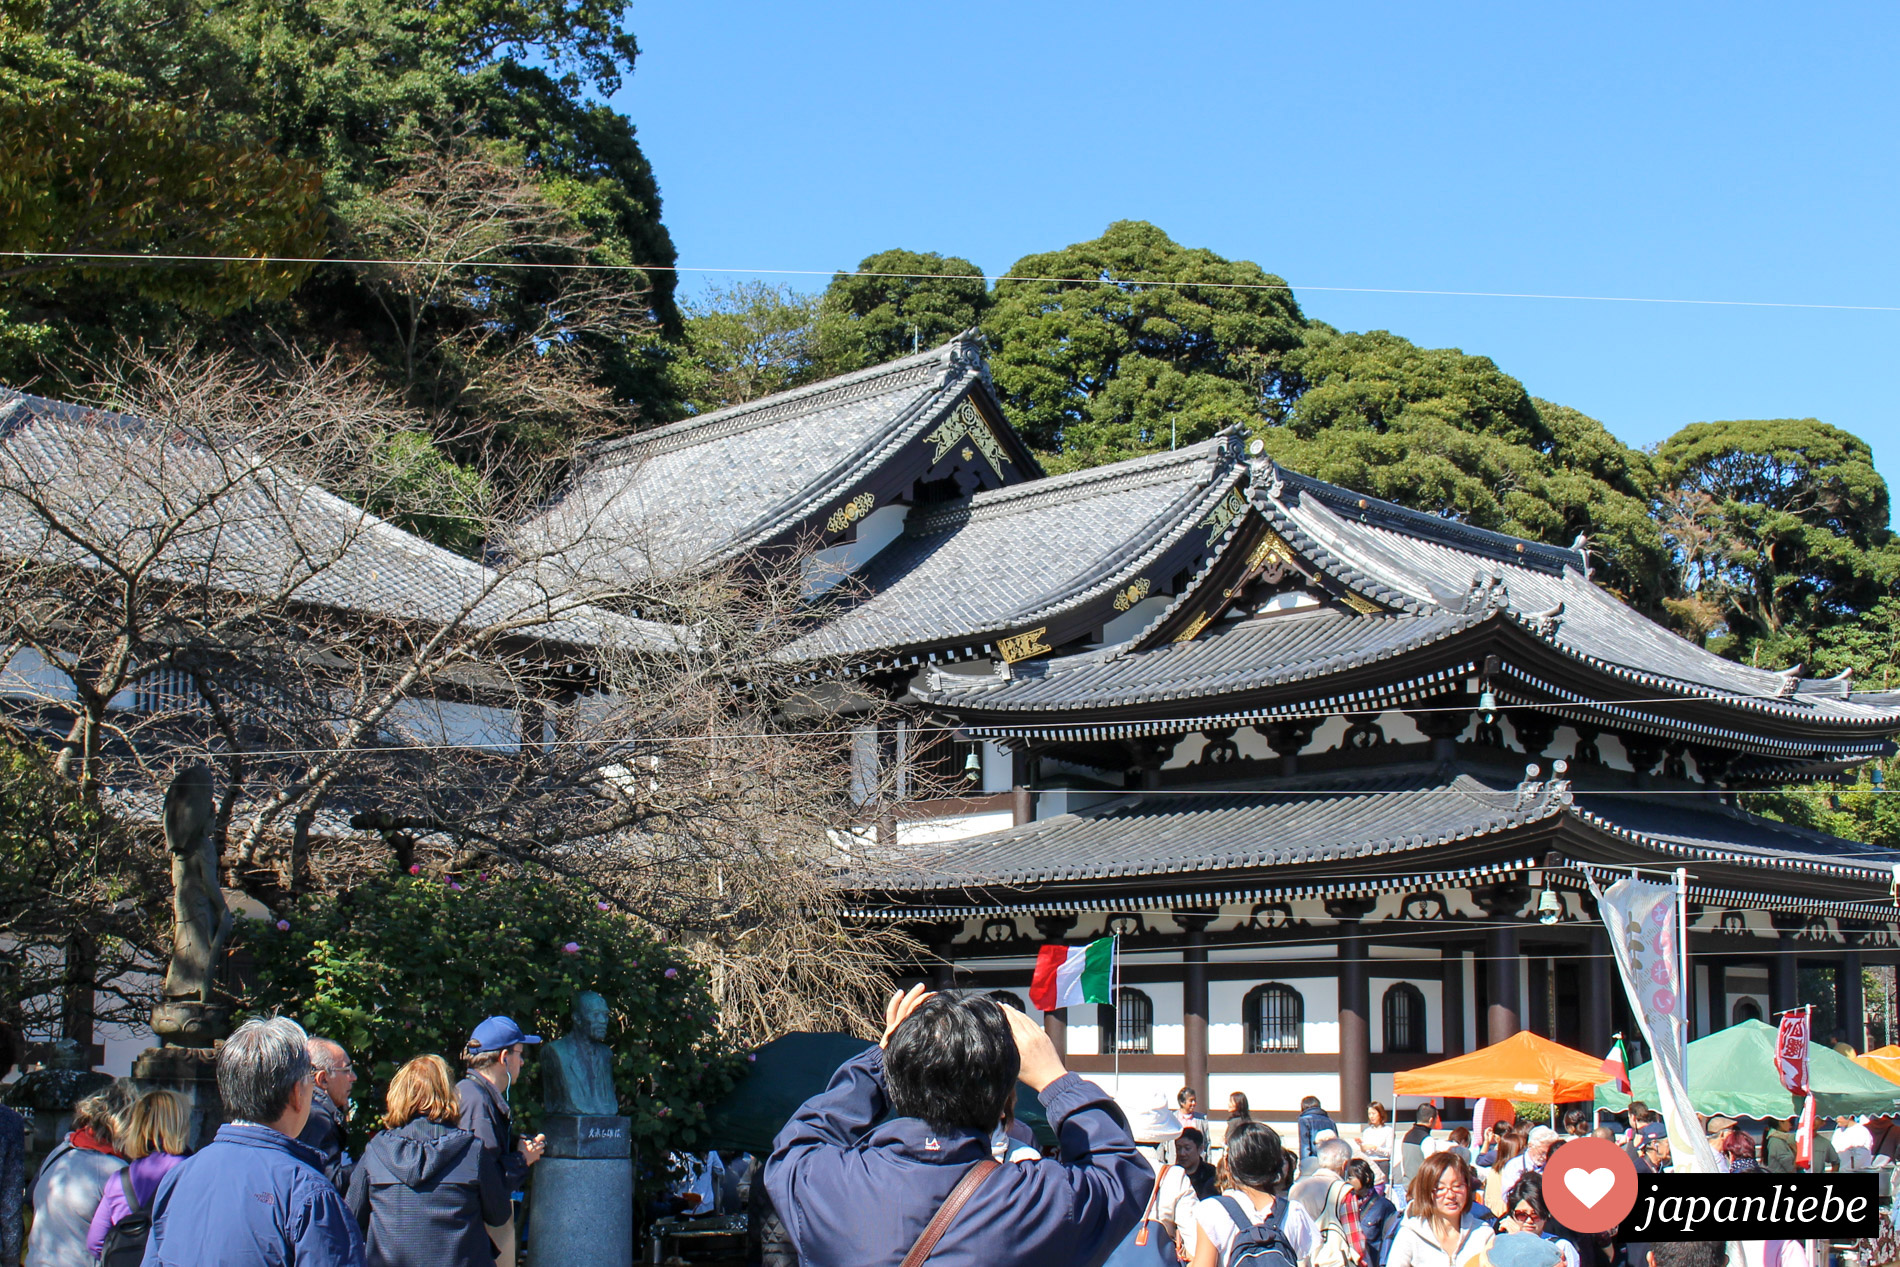 Neben dem großen Buddha Kamakuras beliebtestes Ziel für Touristen: der Hase-dera Tempel.